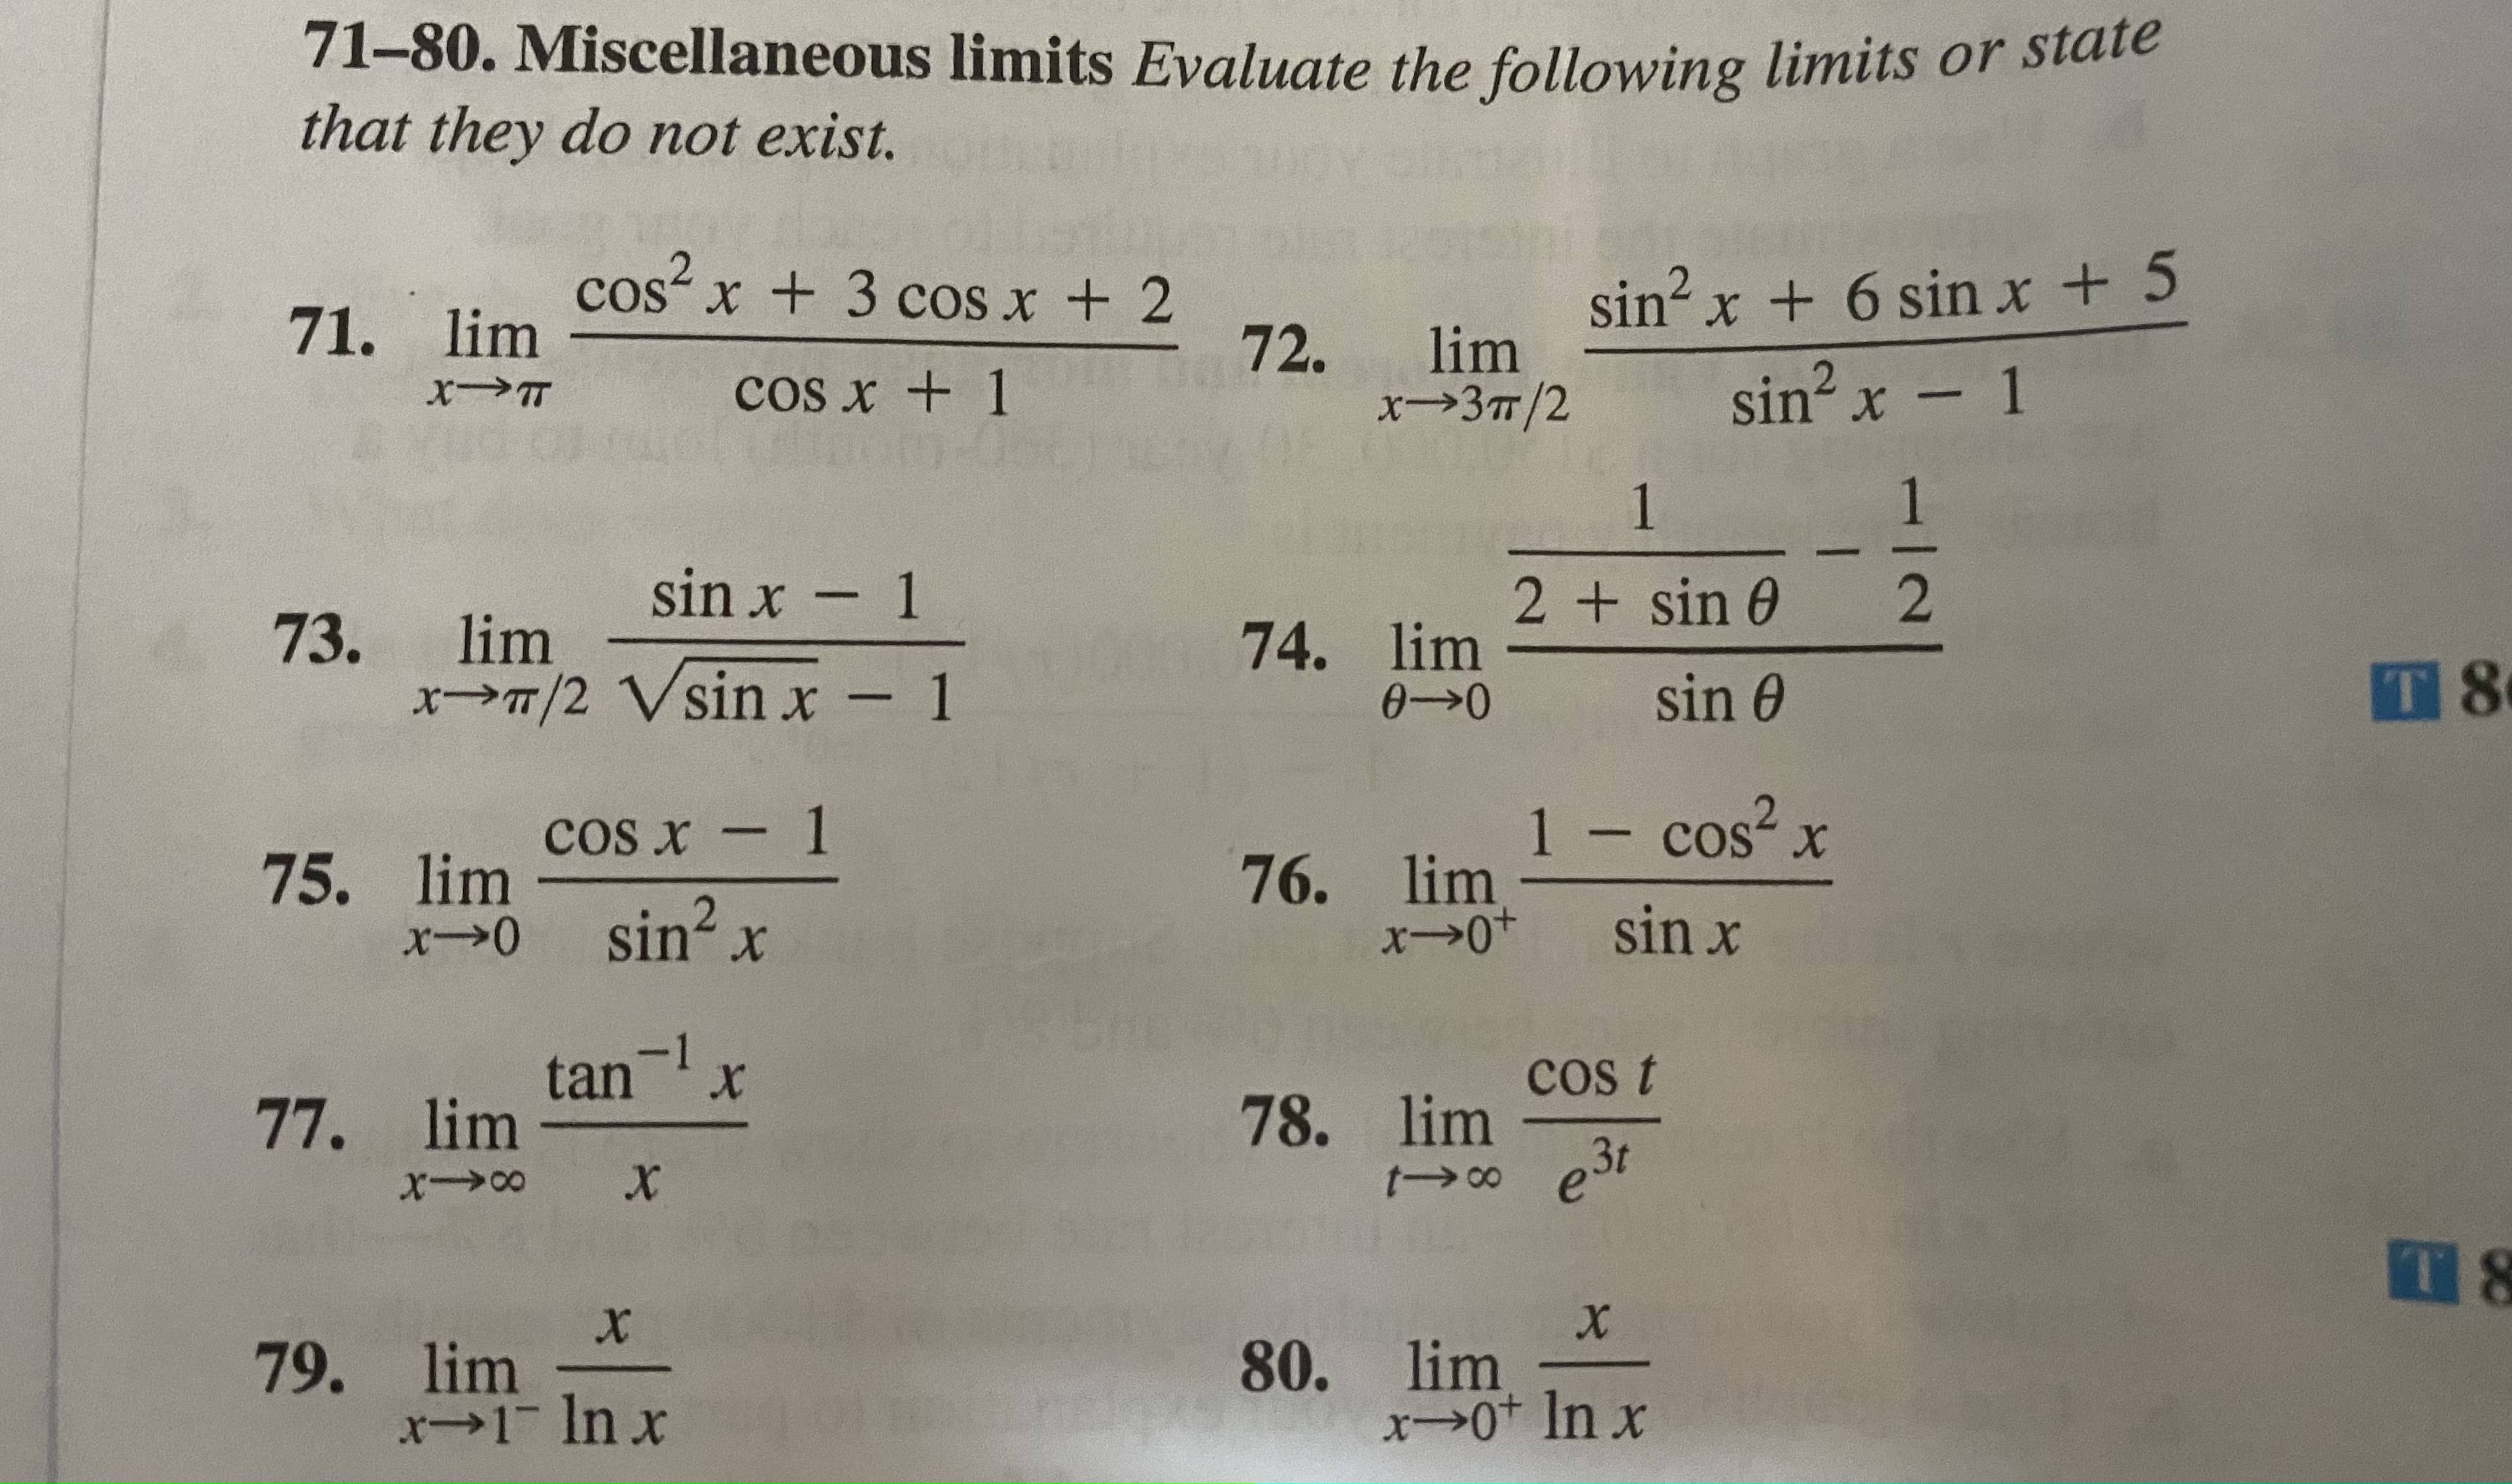 cos x - 1
75. lim -
x→0 sin? x
tan-1
